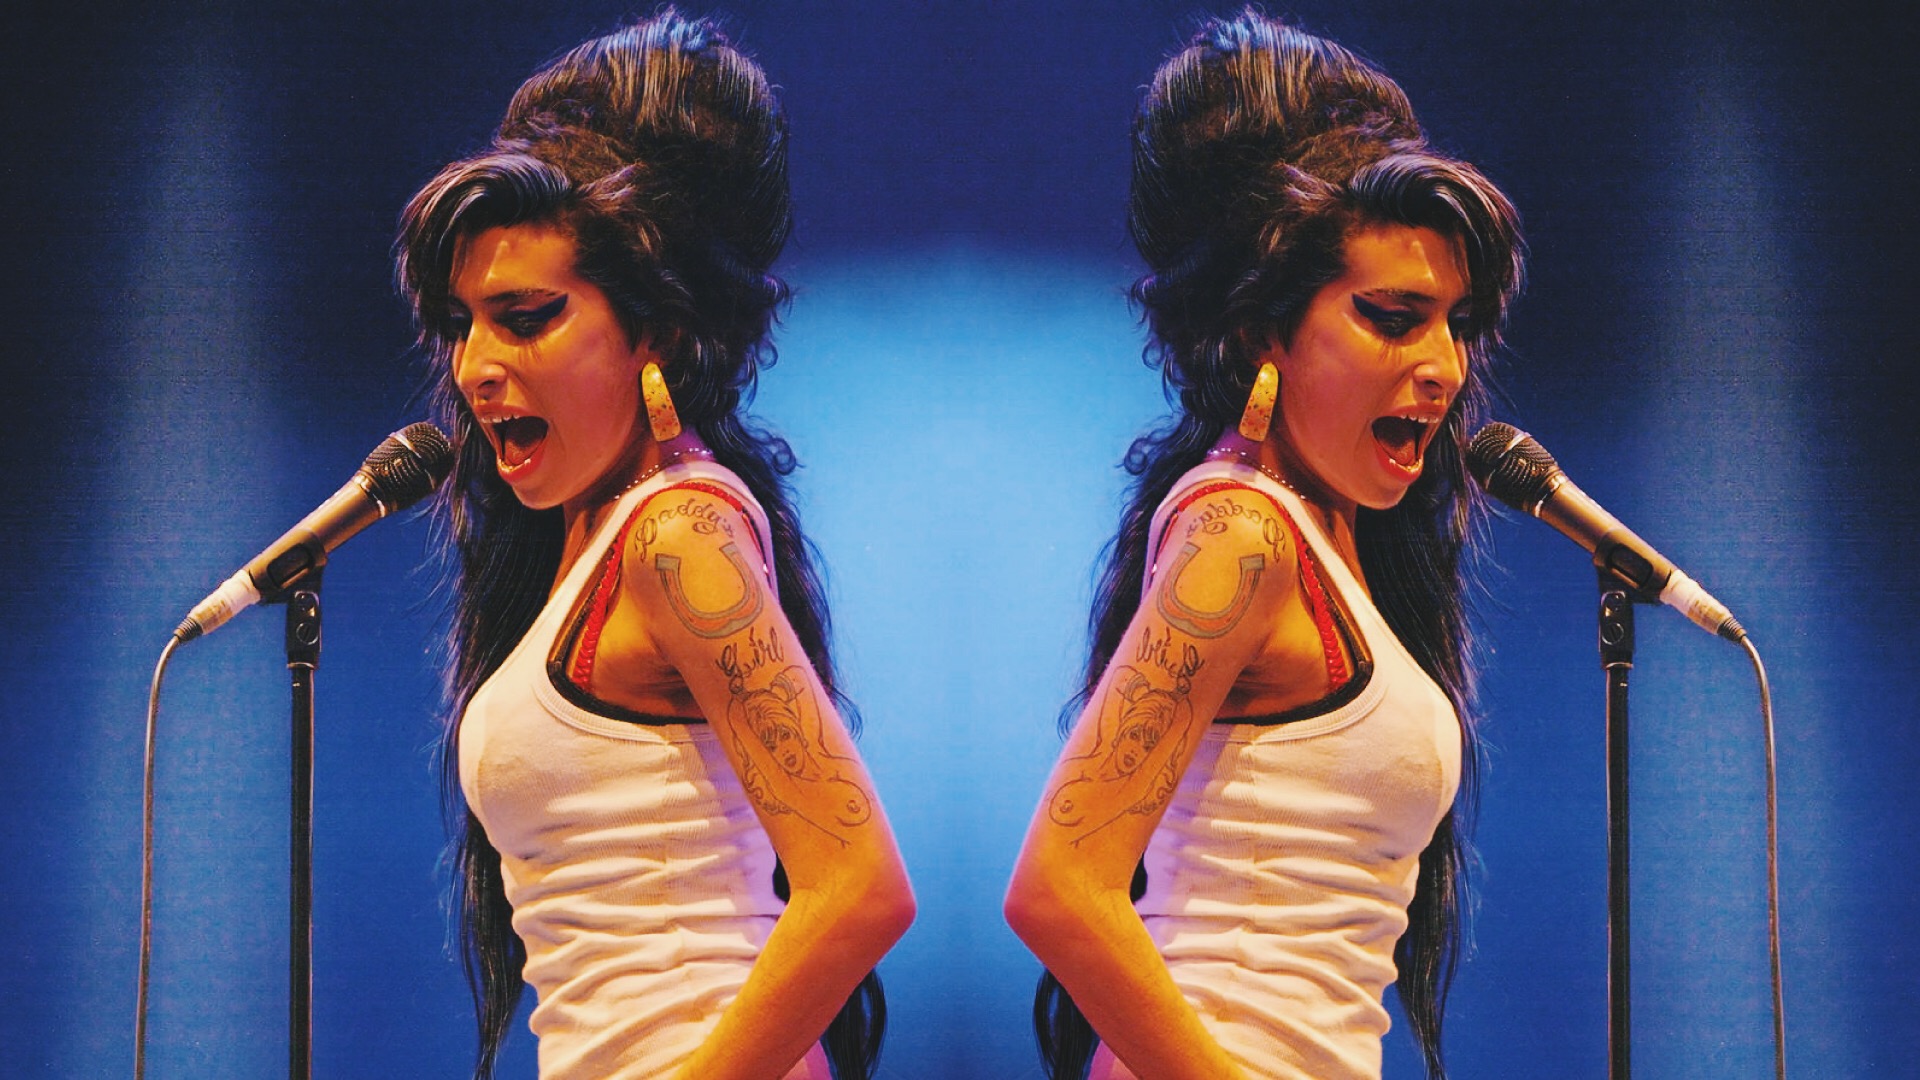 Amy Winehouse: vulnerabilidad, relaciones tóxicas y biopics revanchistas